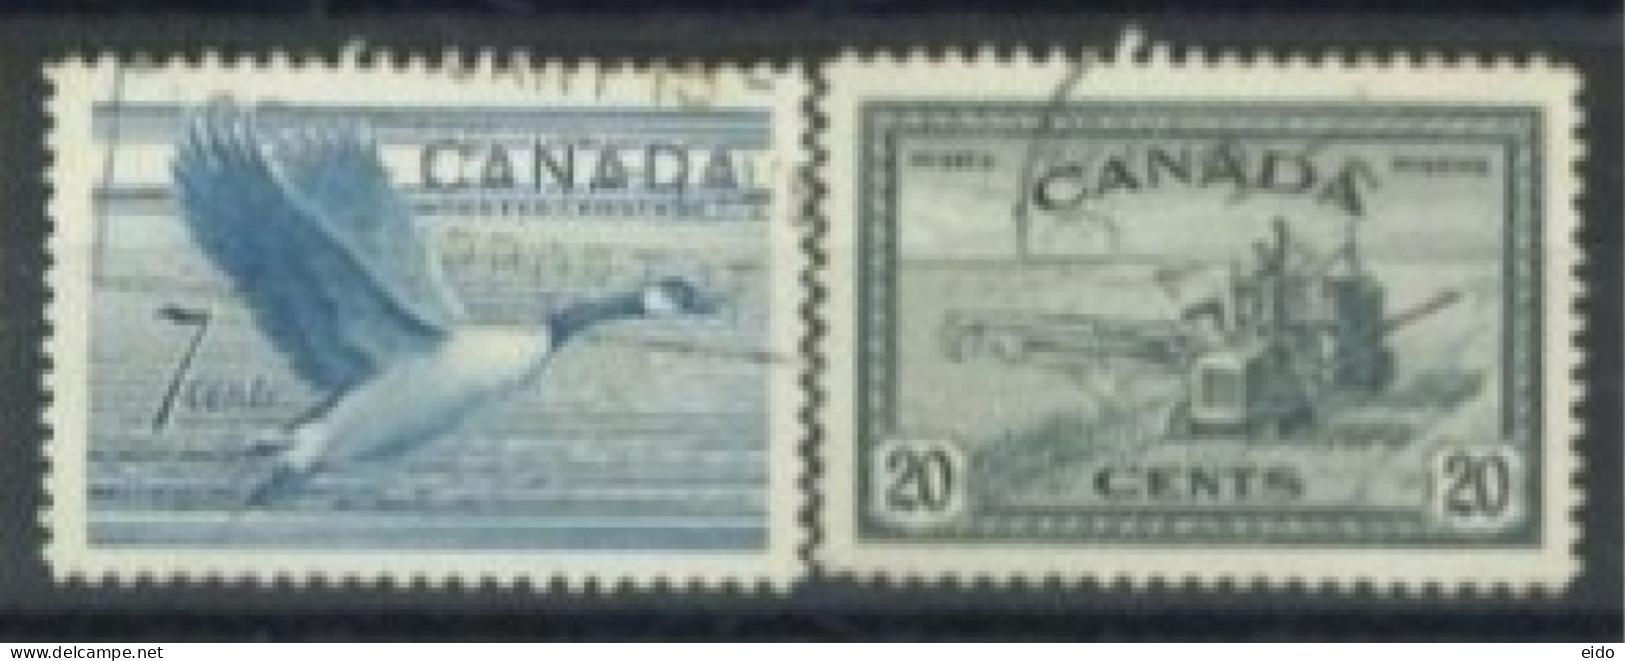 CANADA - 1951/52, CANADIAN GOOSE & COMBINE HARVESTER STAMPS SET OF 2, USED. - Gebruikt